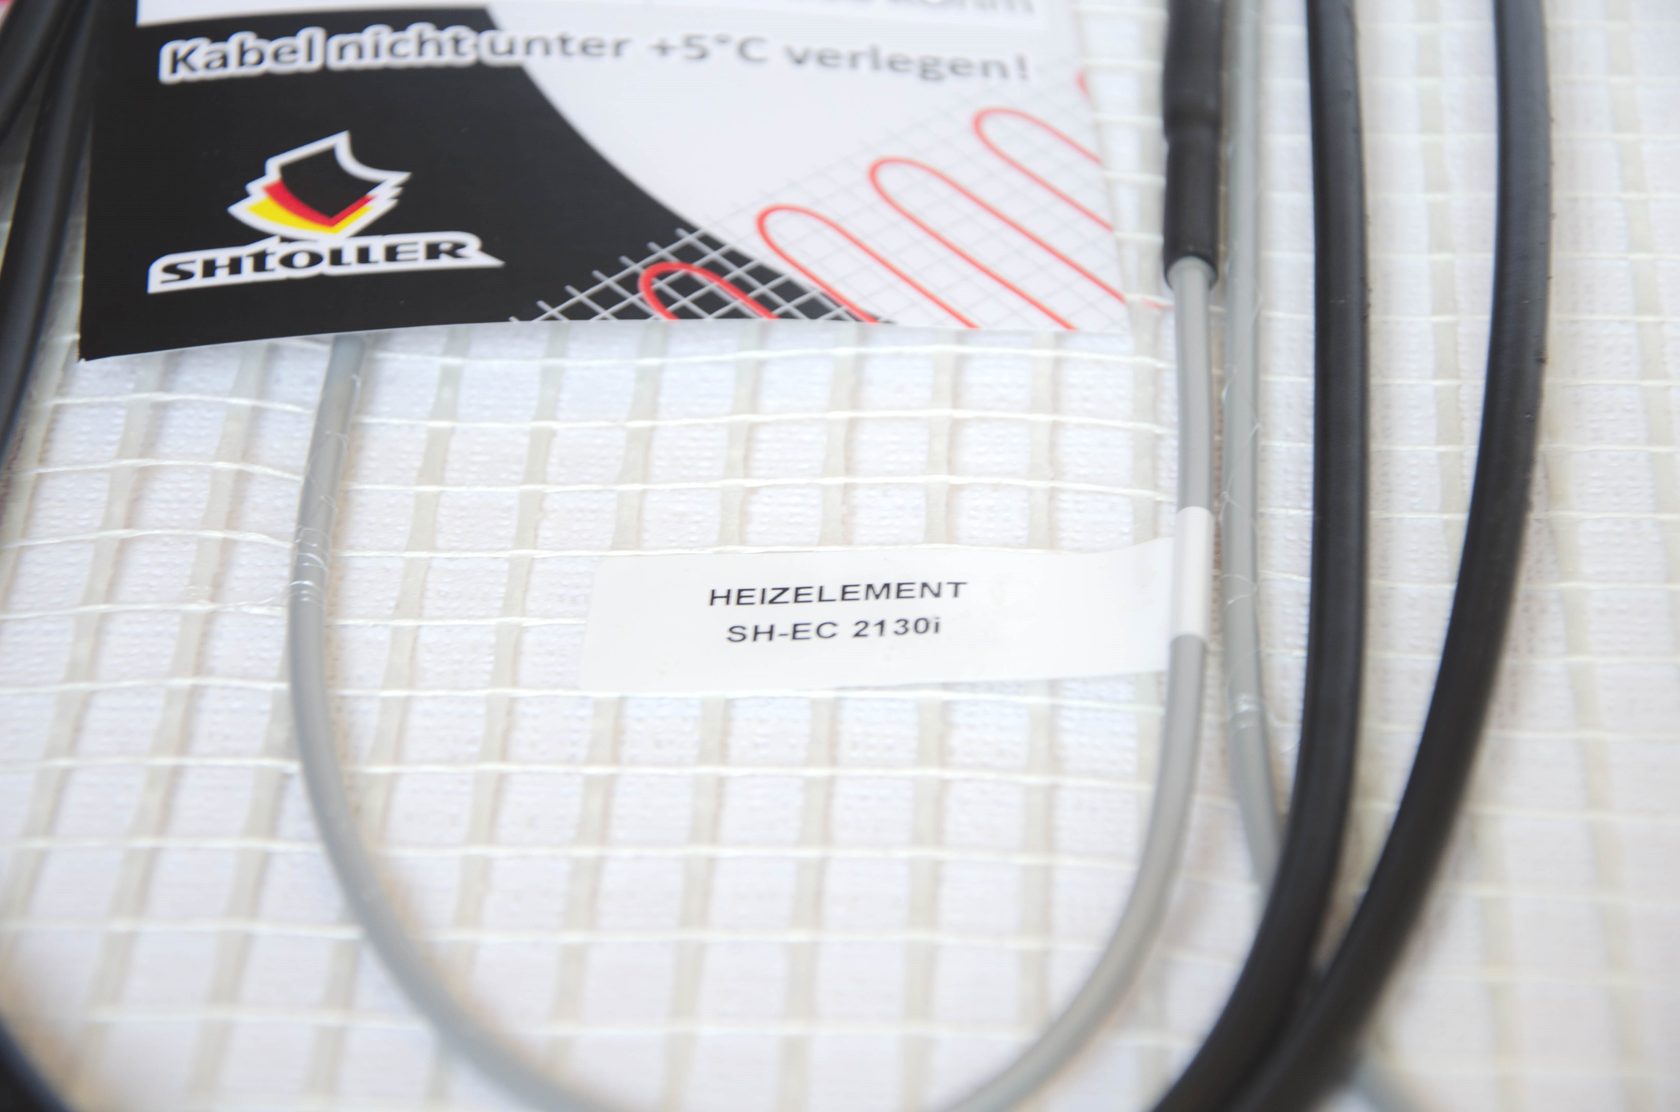 Електрична тепла підлога Shtoller SH-EC 2180i відгуки - зображення 5